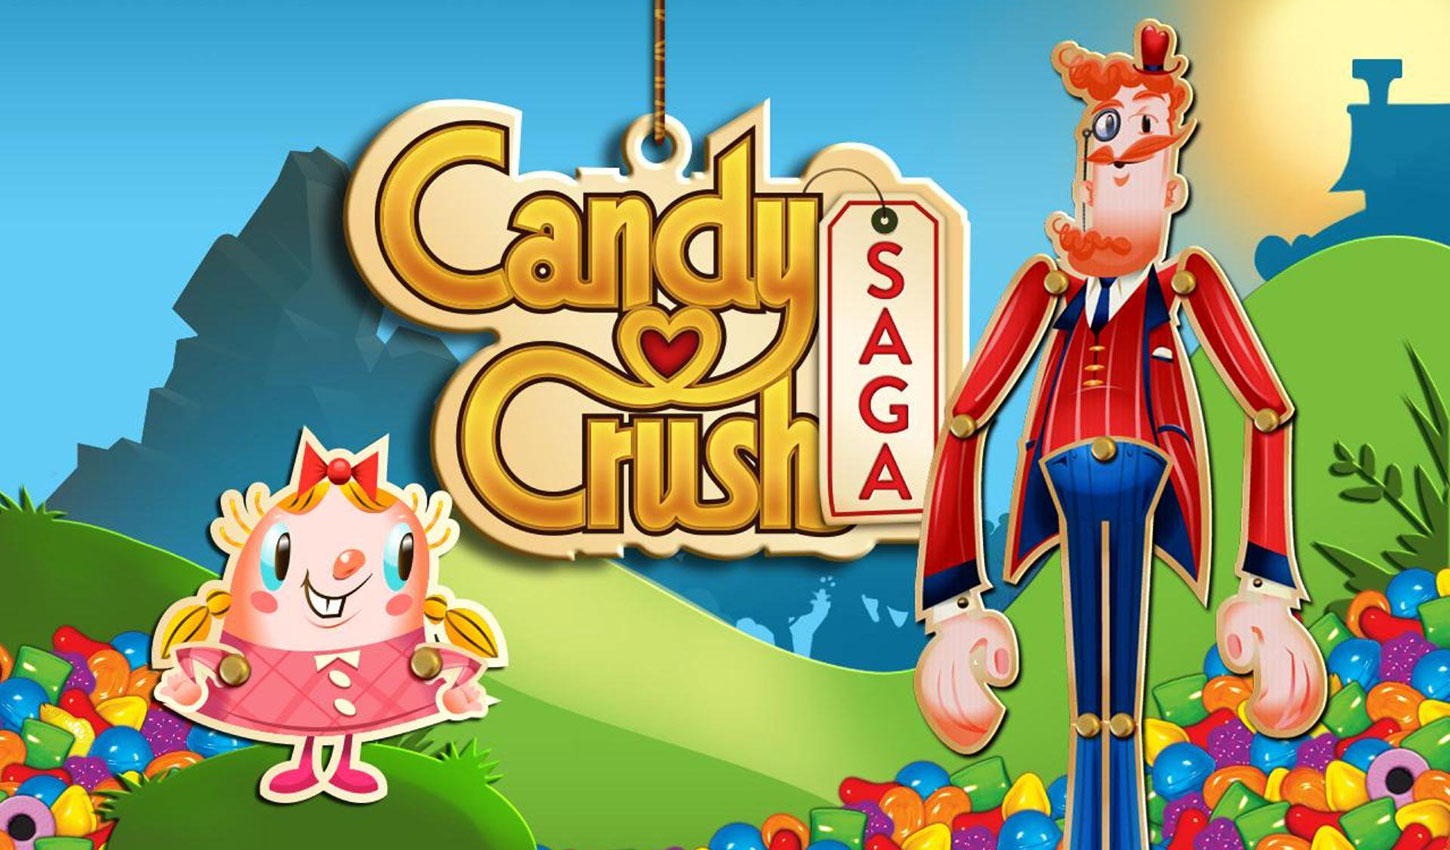 Candy Crush Revenue February 2019